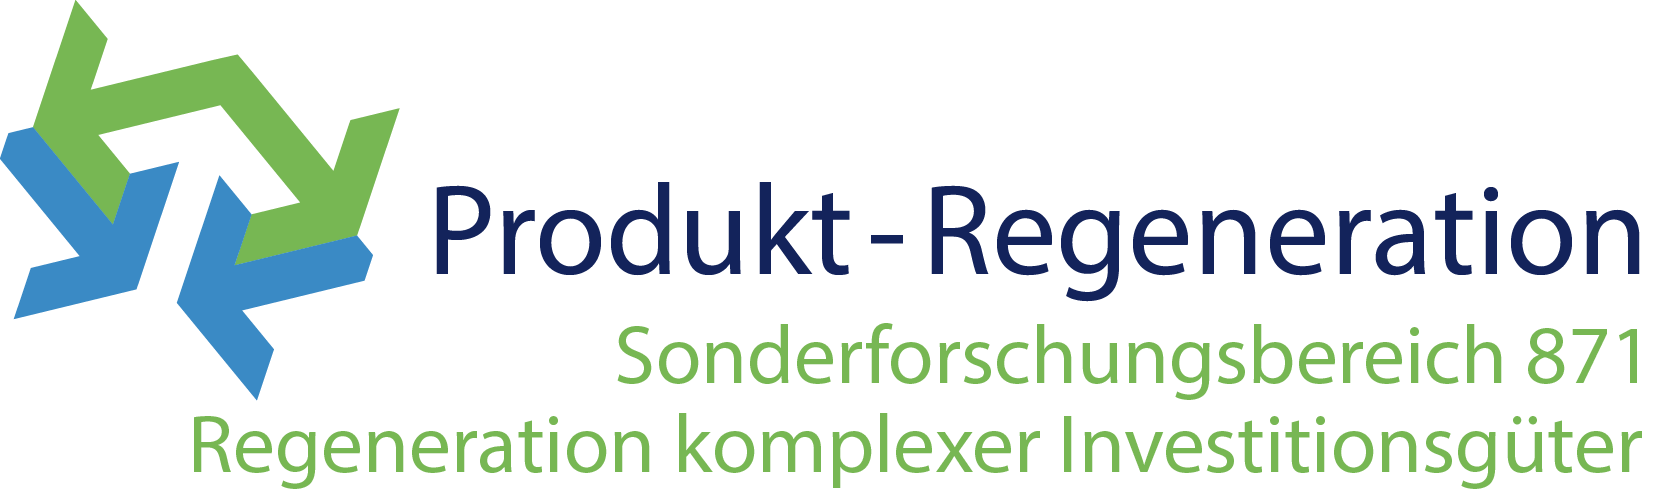 Logo Sonderforschungsbereich 871: Regeneration komplexer Investitionsgüter